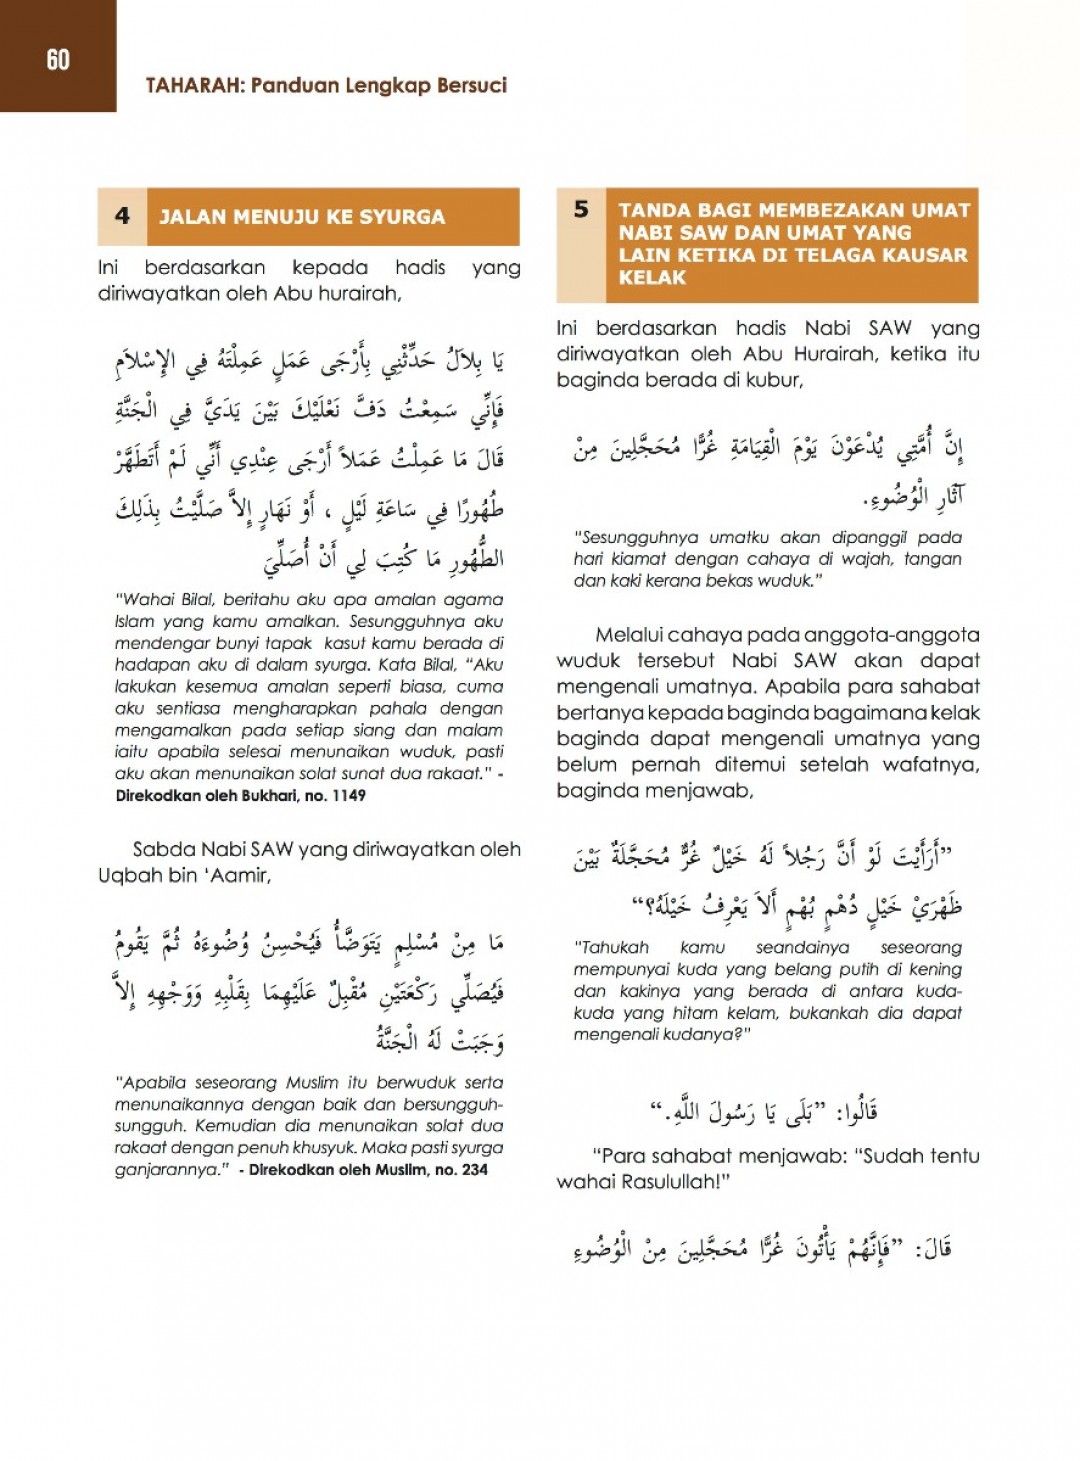 Taharah Panduan Lengkap Bersuci - Fathullah Al-Haq Muhammad Asni